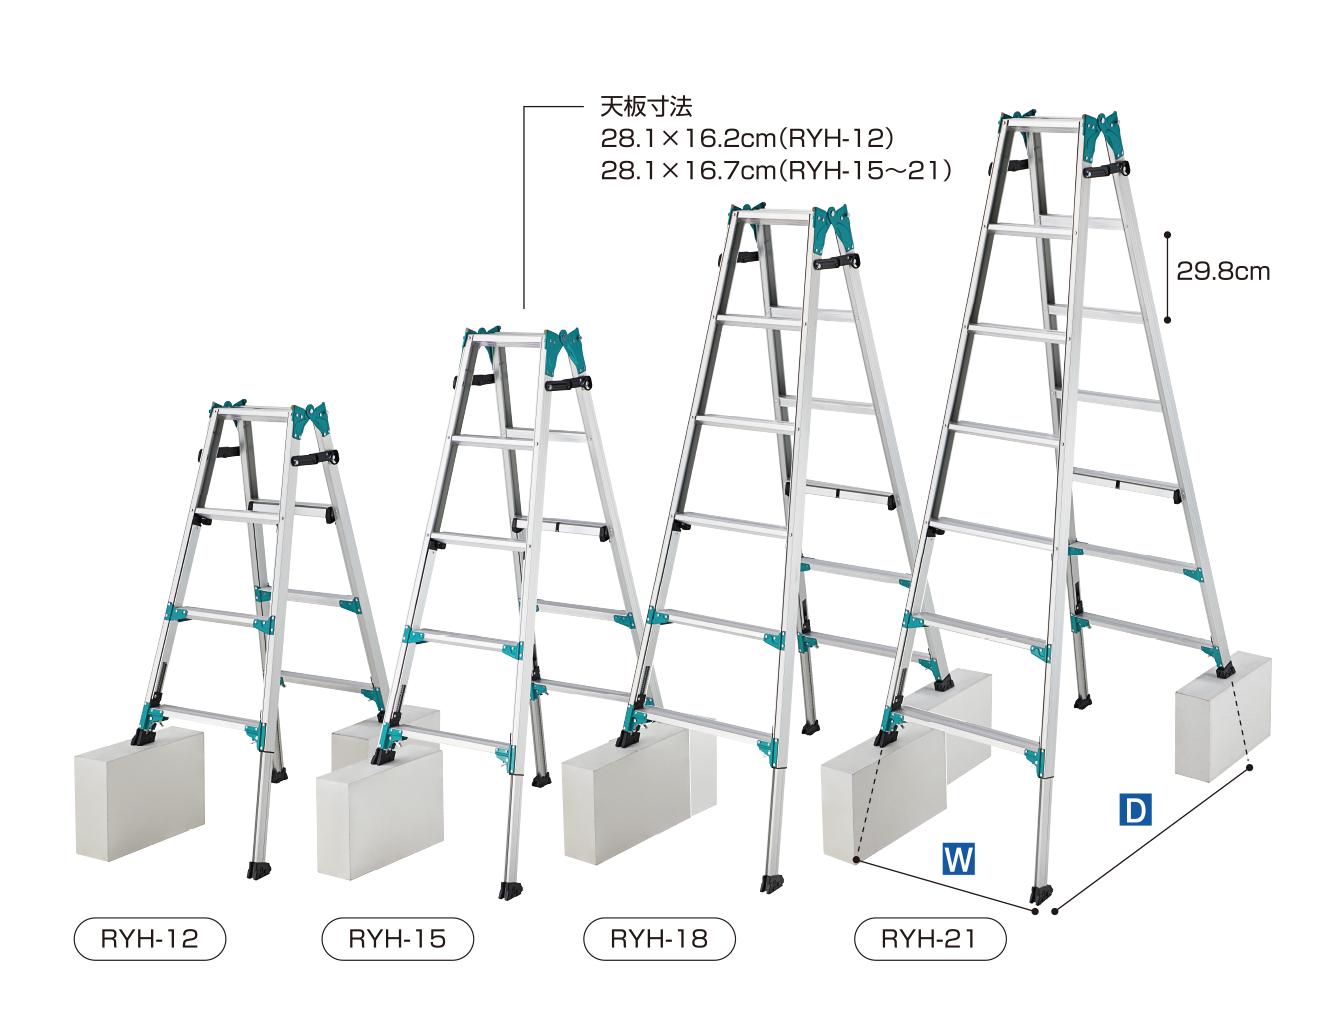 【長谷川工業】業界初!!はしご兼用脚立で立ったまま操作。NEW Rabbit新発売